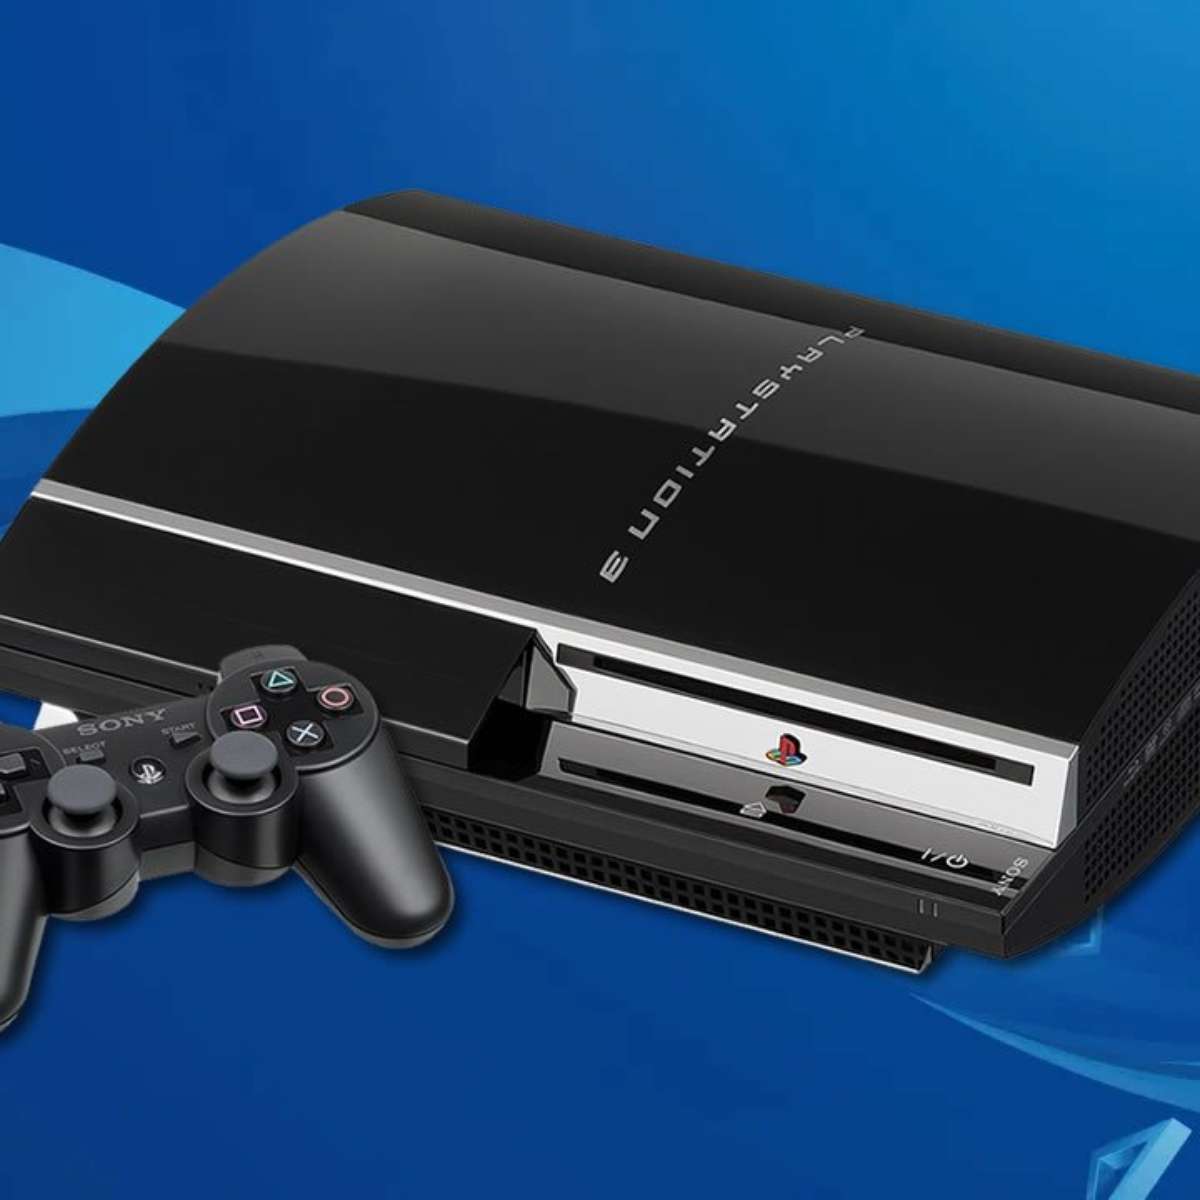 Quanto custa um PlayStation 3 em 2023? Confira preços e modelos